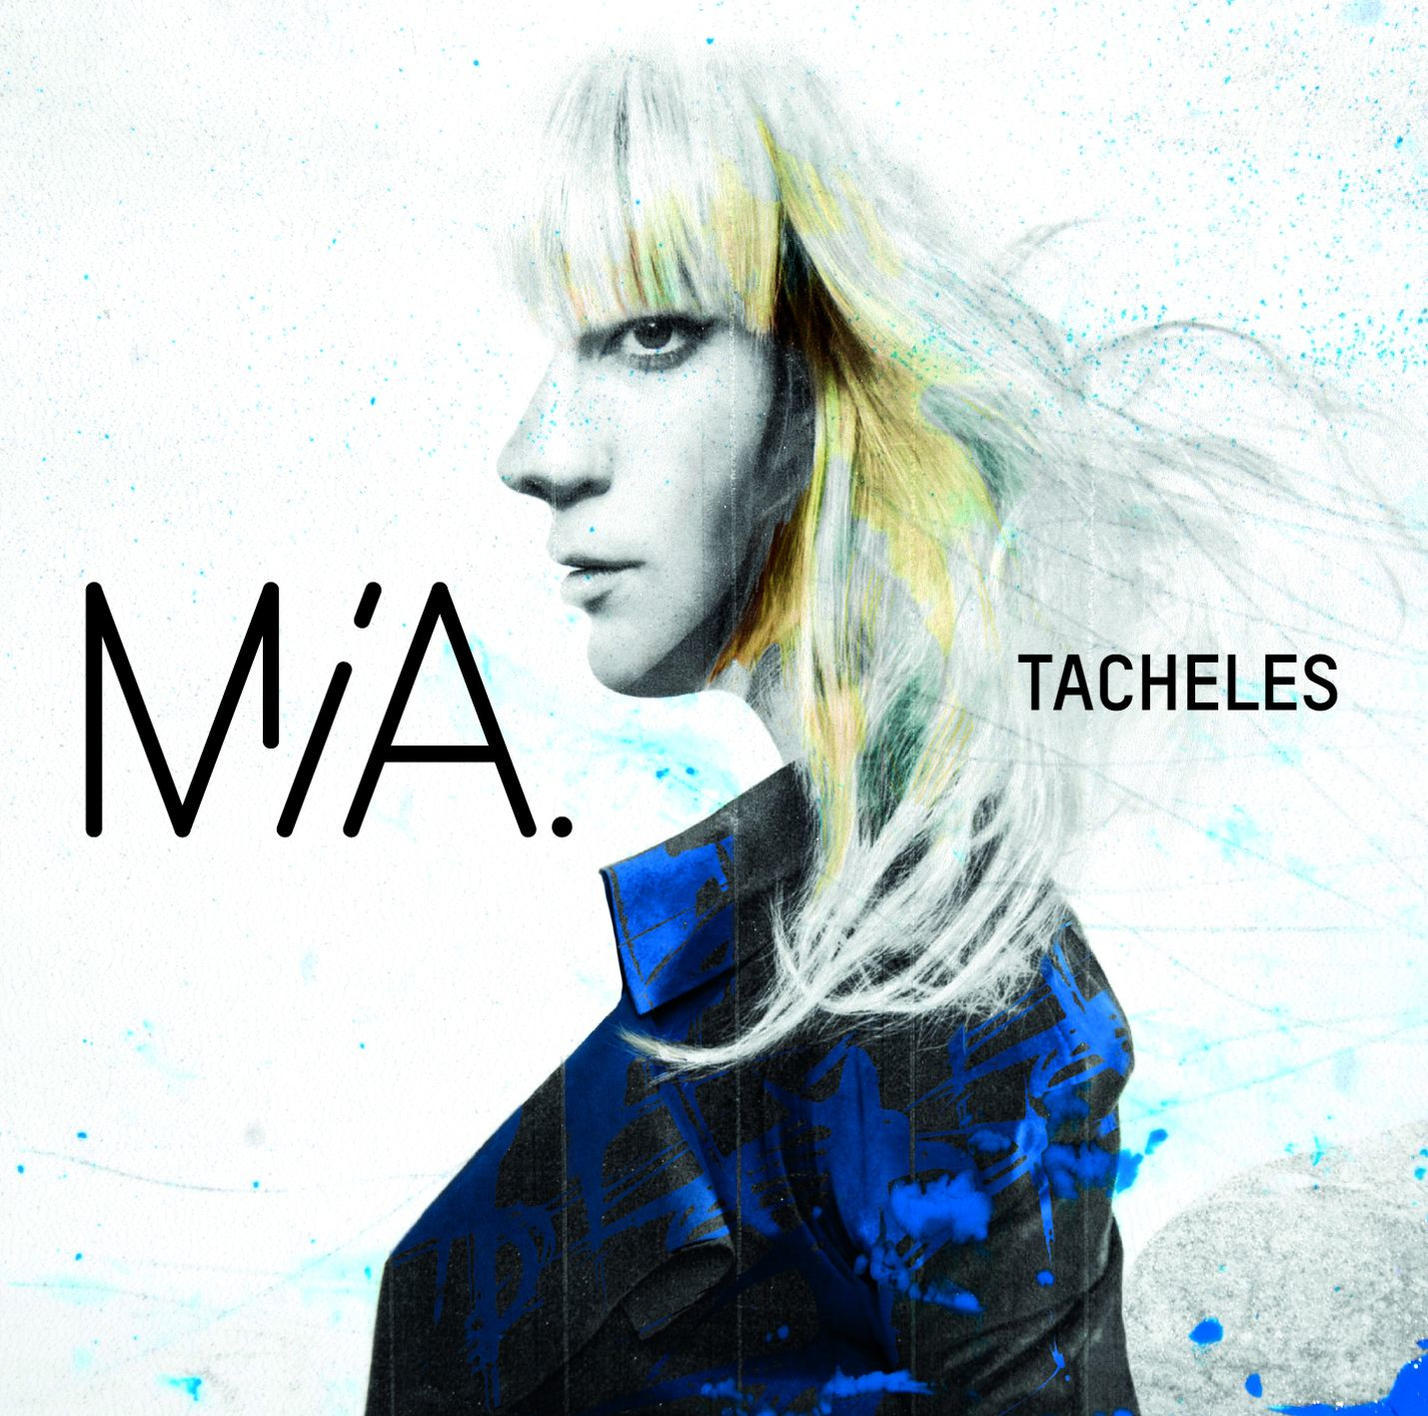 MIA. Vinyl) (Vinyl) Tacheles (Ltd.Coloured - -